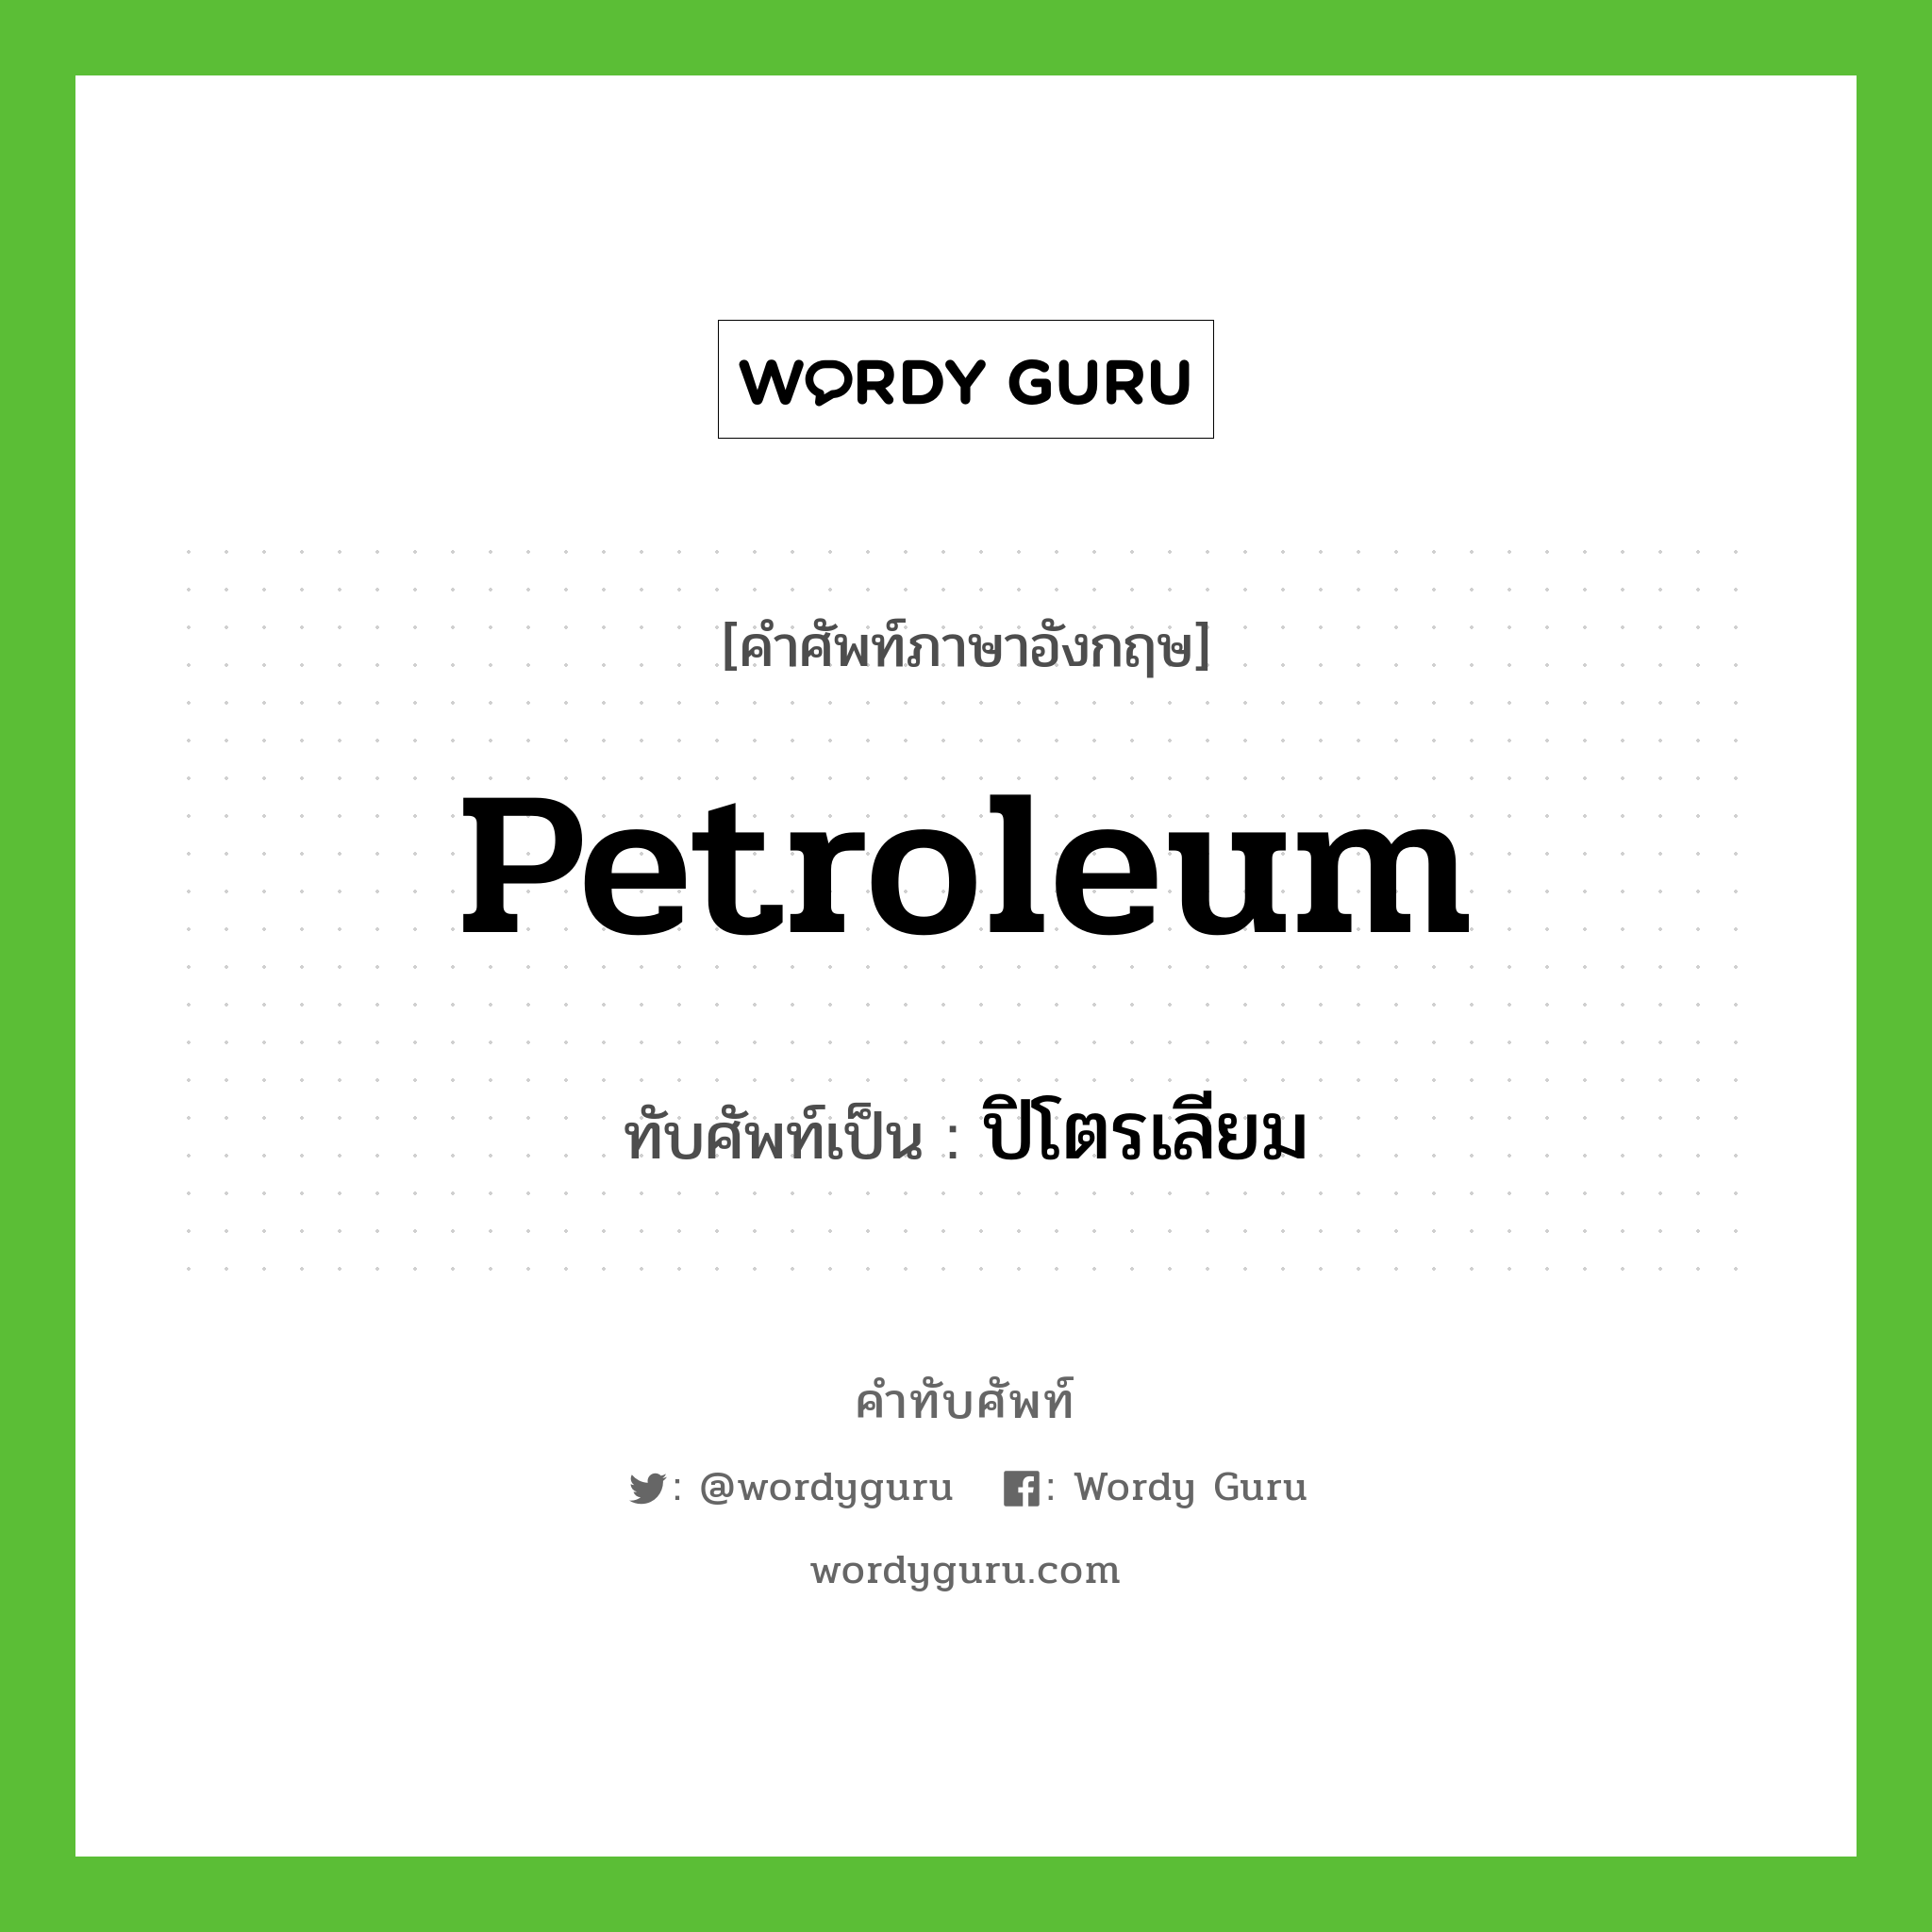 ปิโตรเลียม เขียนอย่างไร?, คำศัพท์ภาษาอังกฤษ ปิโตรเลียม ทับศัพท์เป็น petroleum